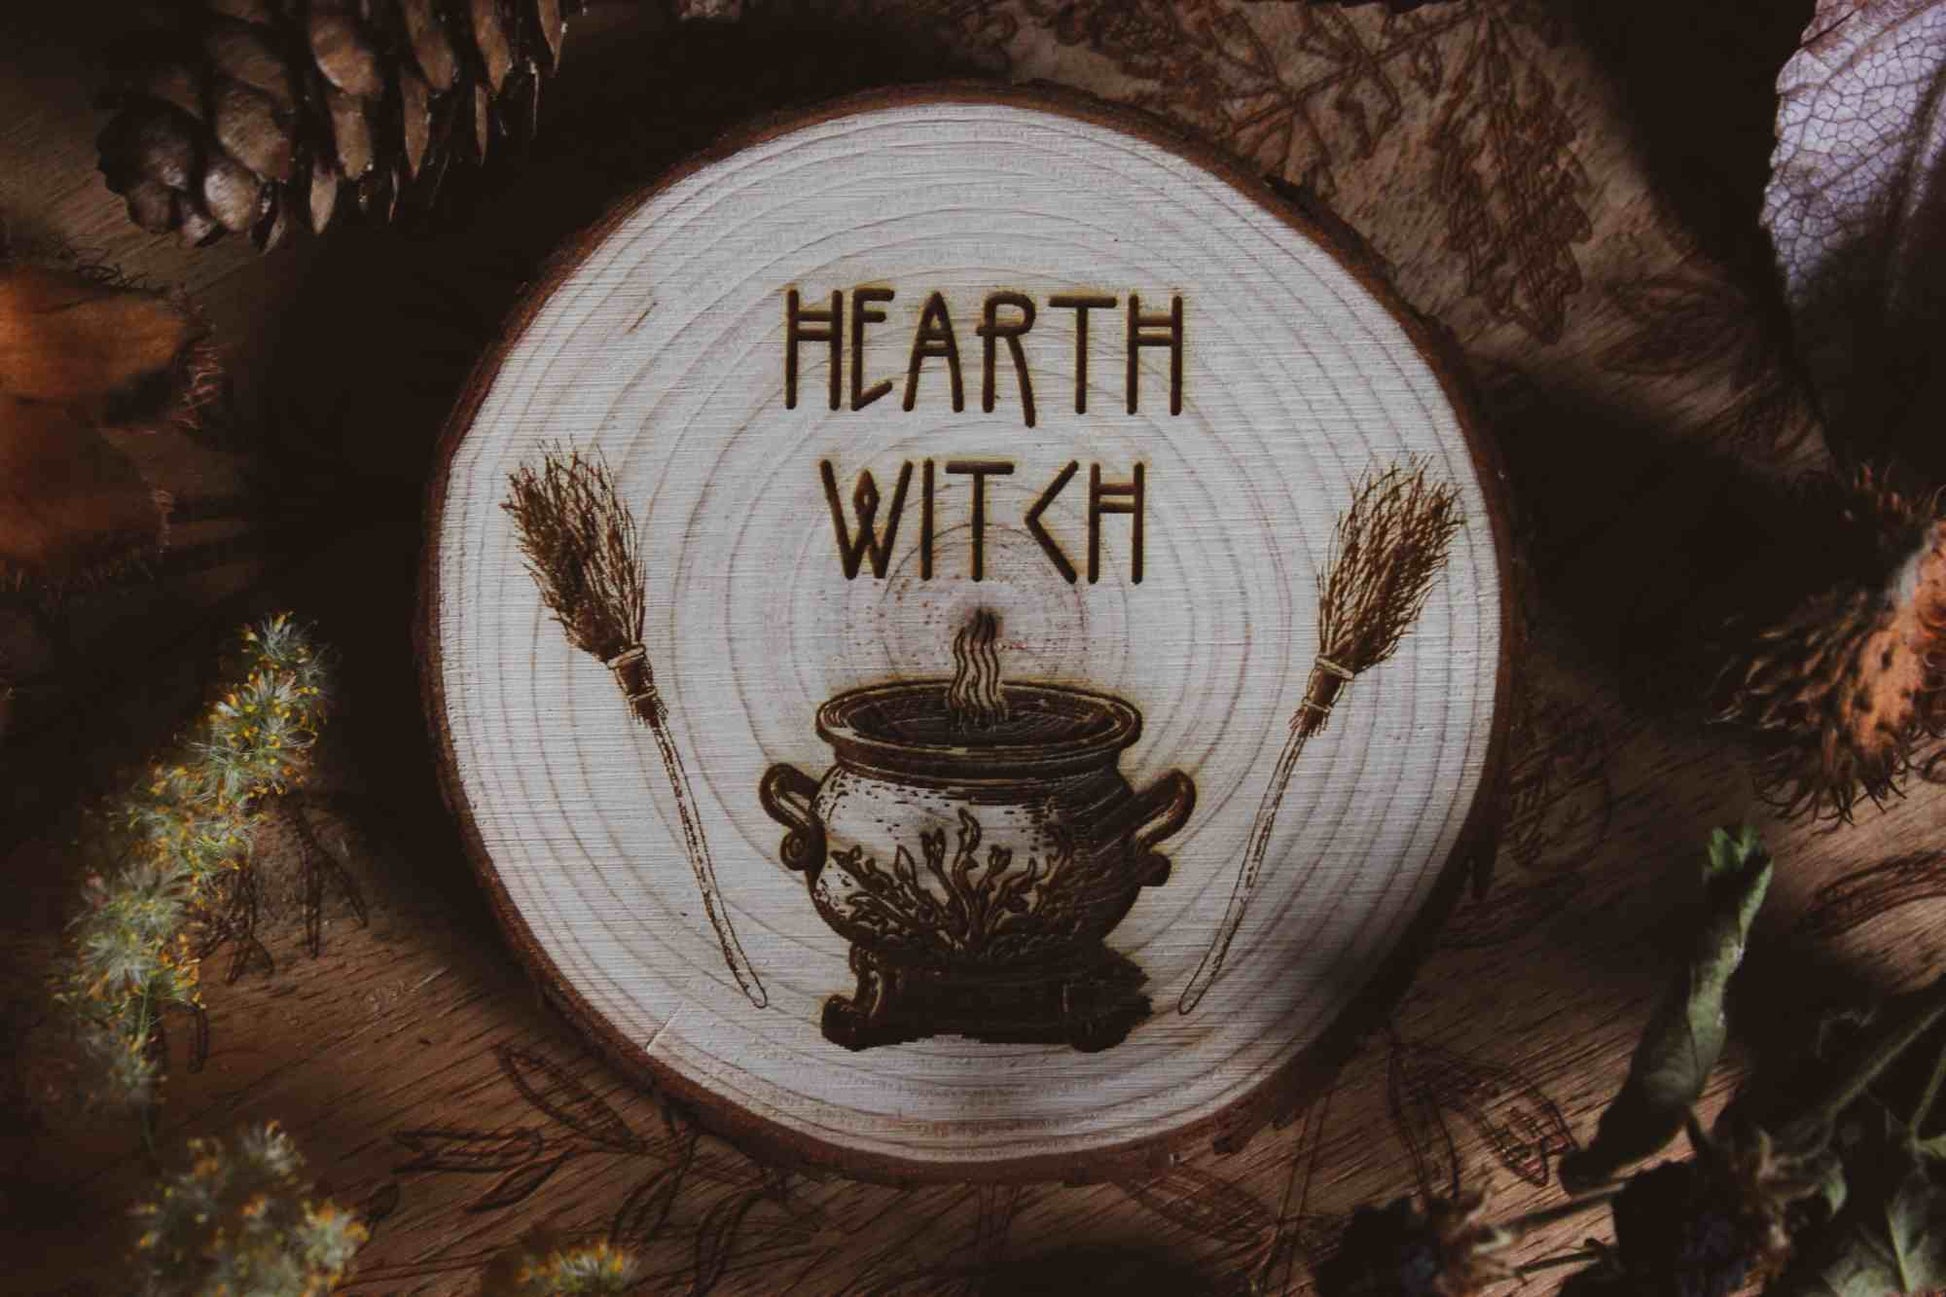 Wandbild aus Holz "Hearth Witch" -Bild eines hölzernen Gegenstands mit der Inschrift ‘Hearth Witch’, auf der Scheibe sieht man 2 Besen die einen Hexenkessel umrahmen umgeben von natürlichen Elementen wie Tannenzapfen und Blumen, 